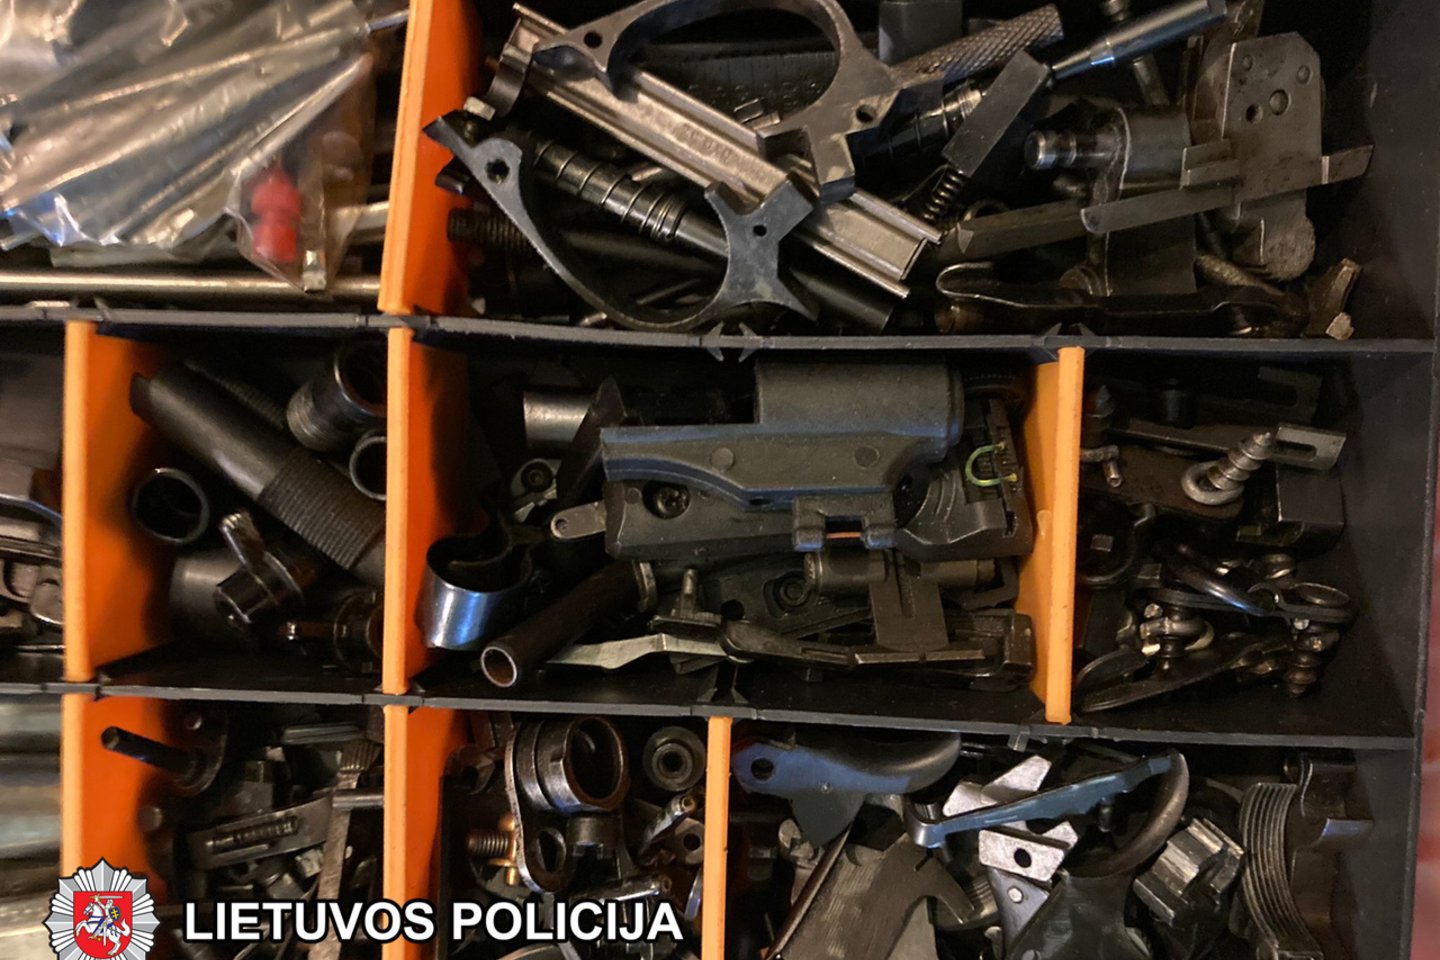  Vilniaus policija smogė prekeiviams ginklais.<br> Vilniaus apskrities VPK nuotr.